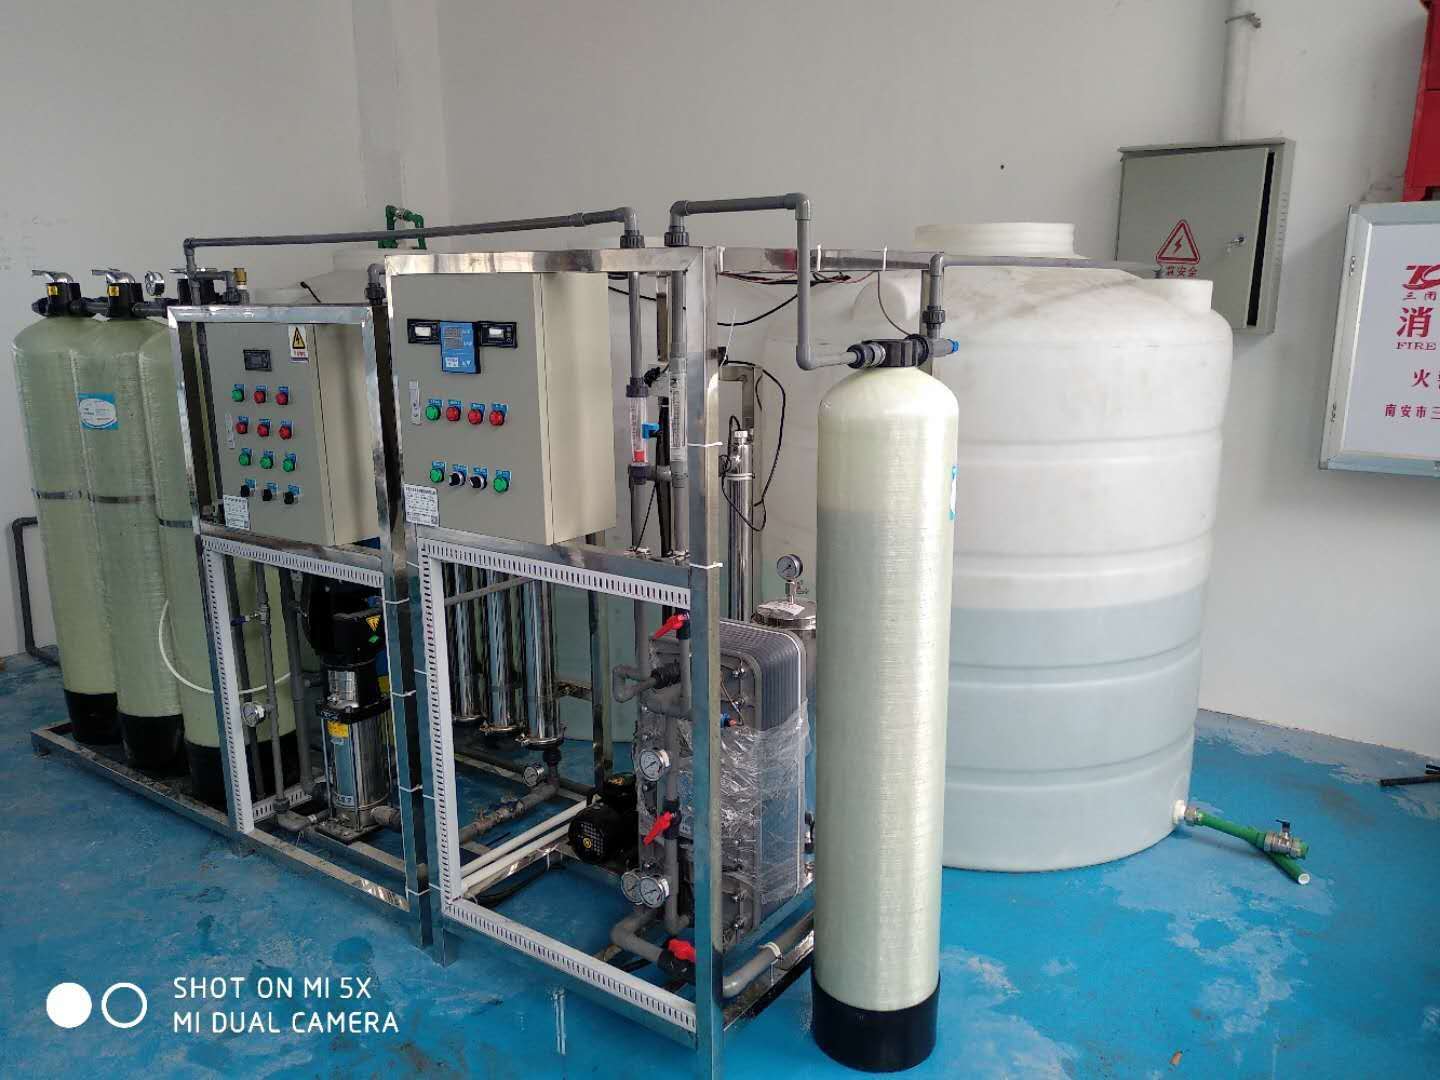 东莞无酸碱纯水系统 EDI超纯水设备